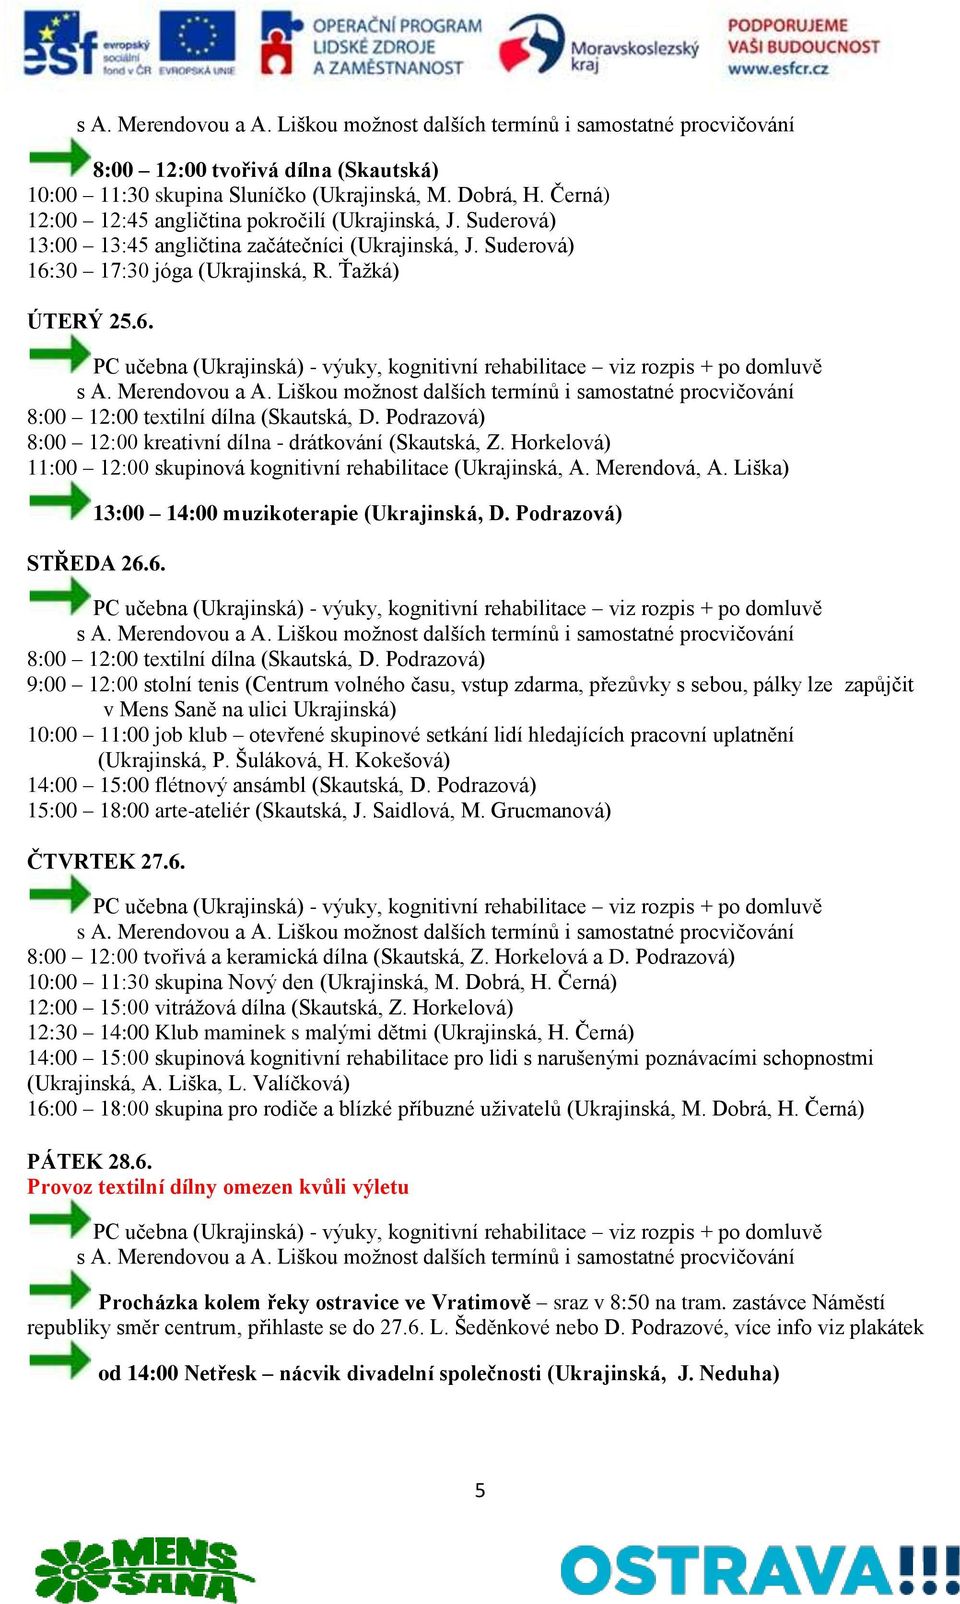 Černá) 14:00 15:00 skupinová kognitivní rehabilitace pro lidi s narušenými poznávacími schopnostmi (Ukrajinská, A. Liška, L.